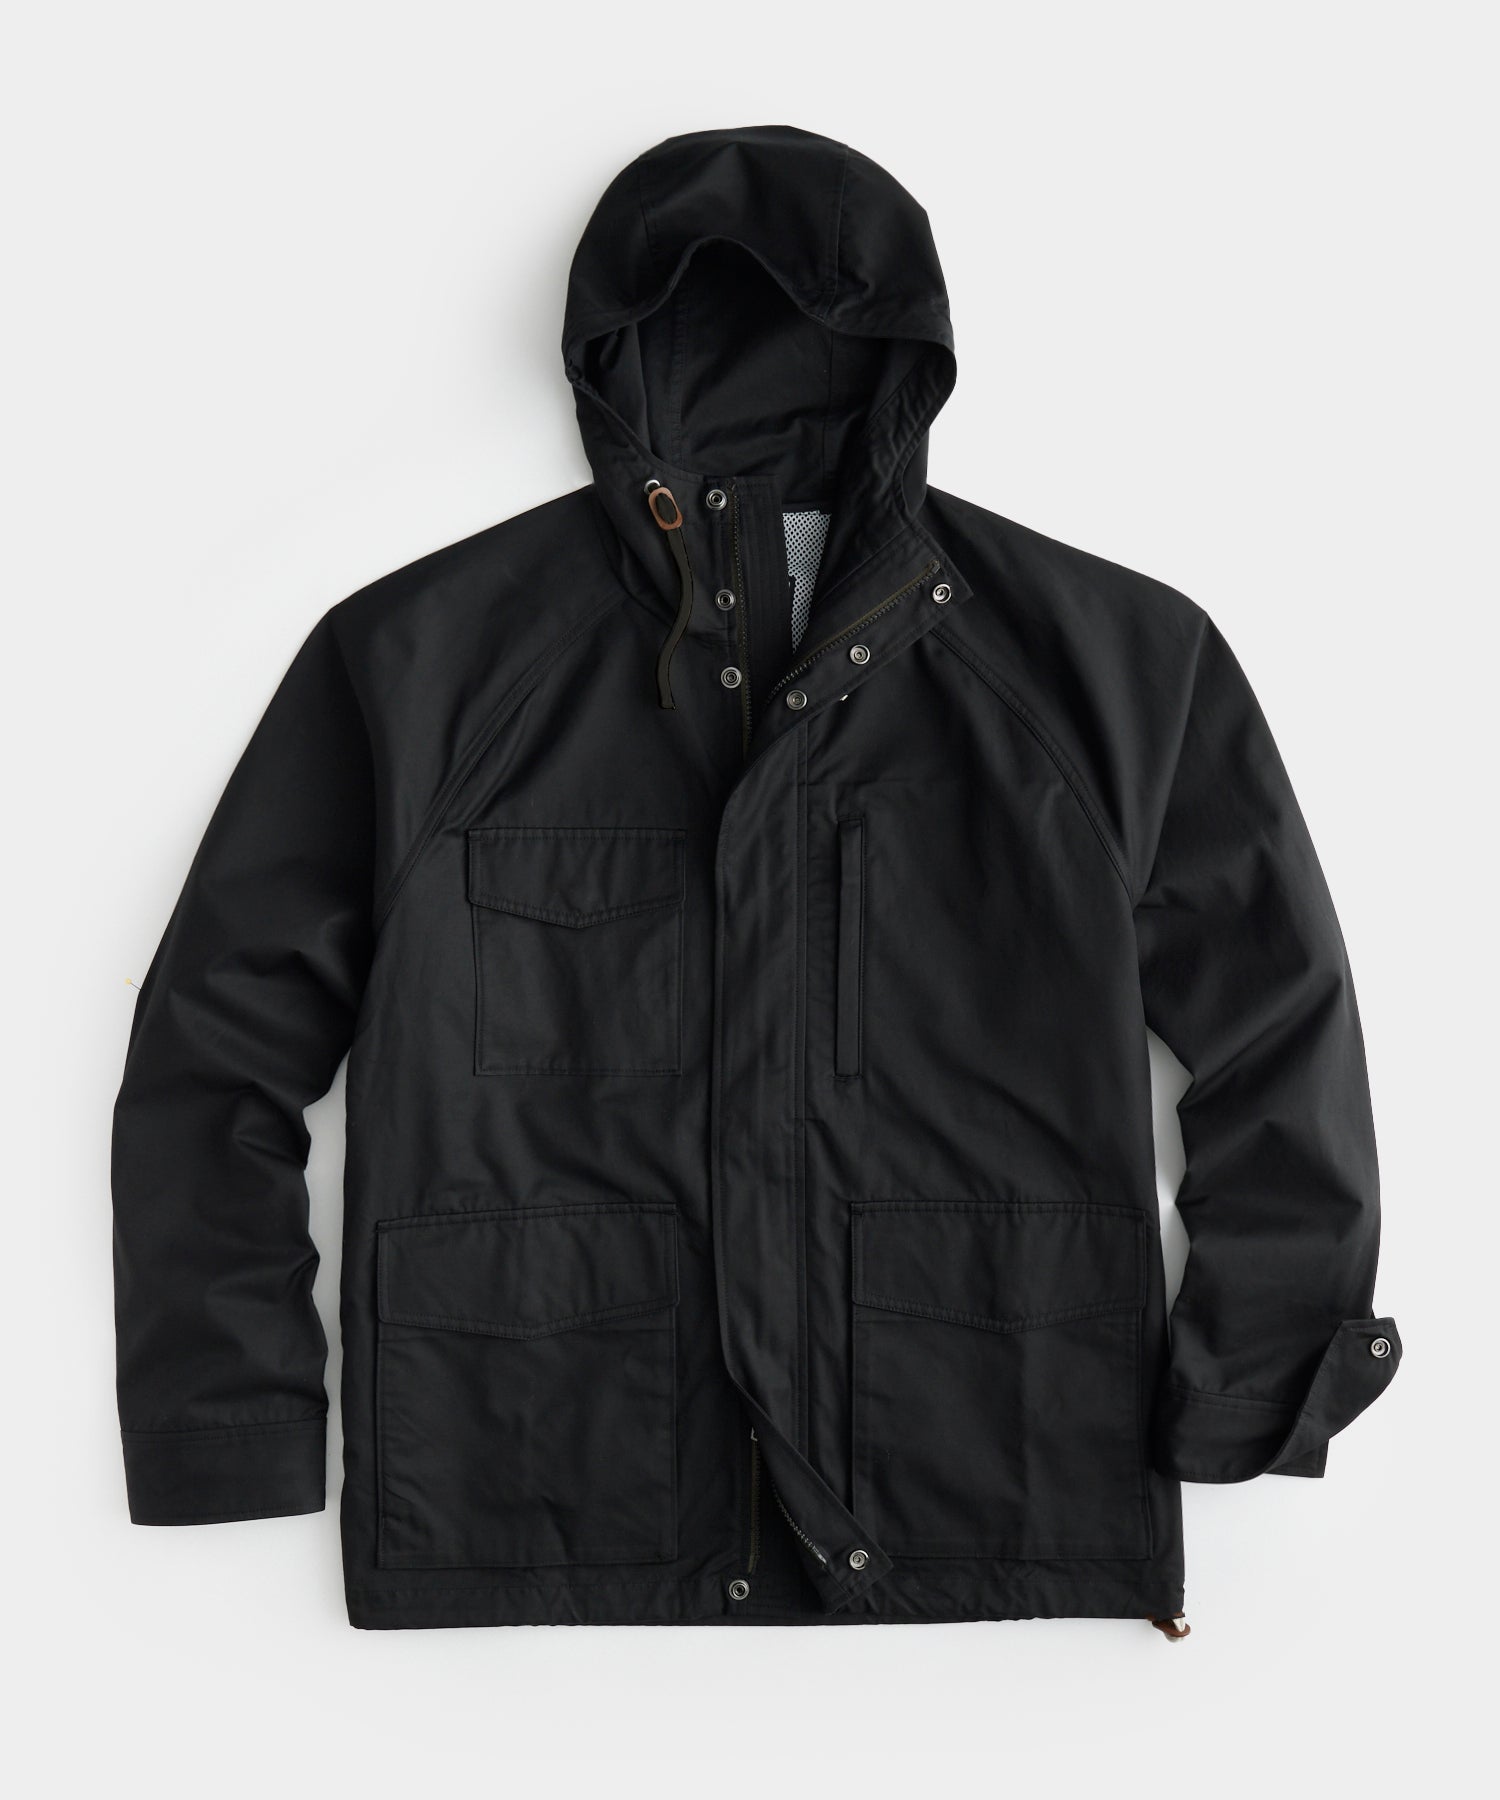 Trail Jacket in Black